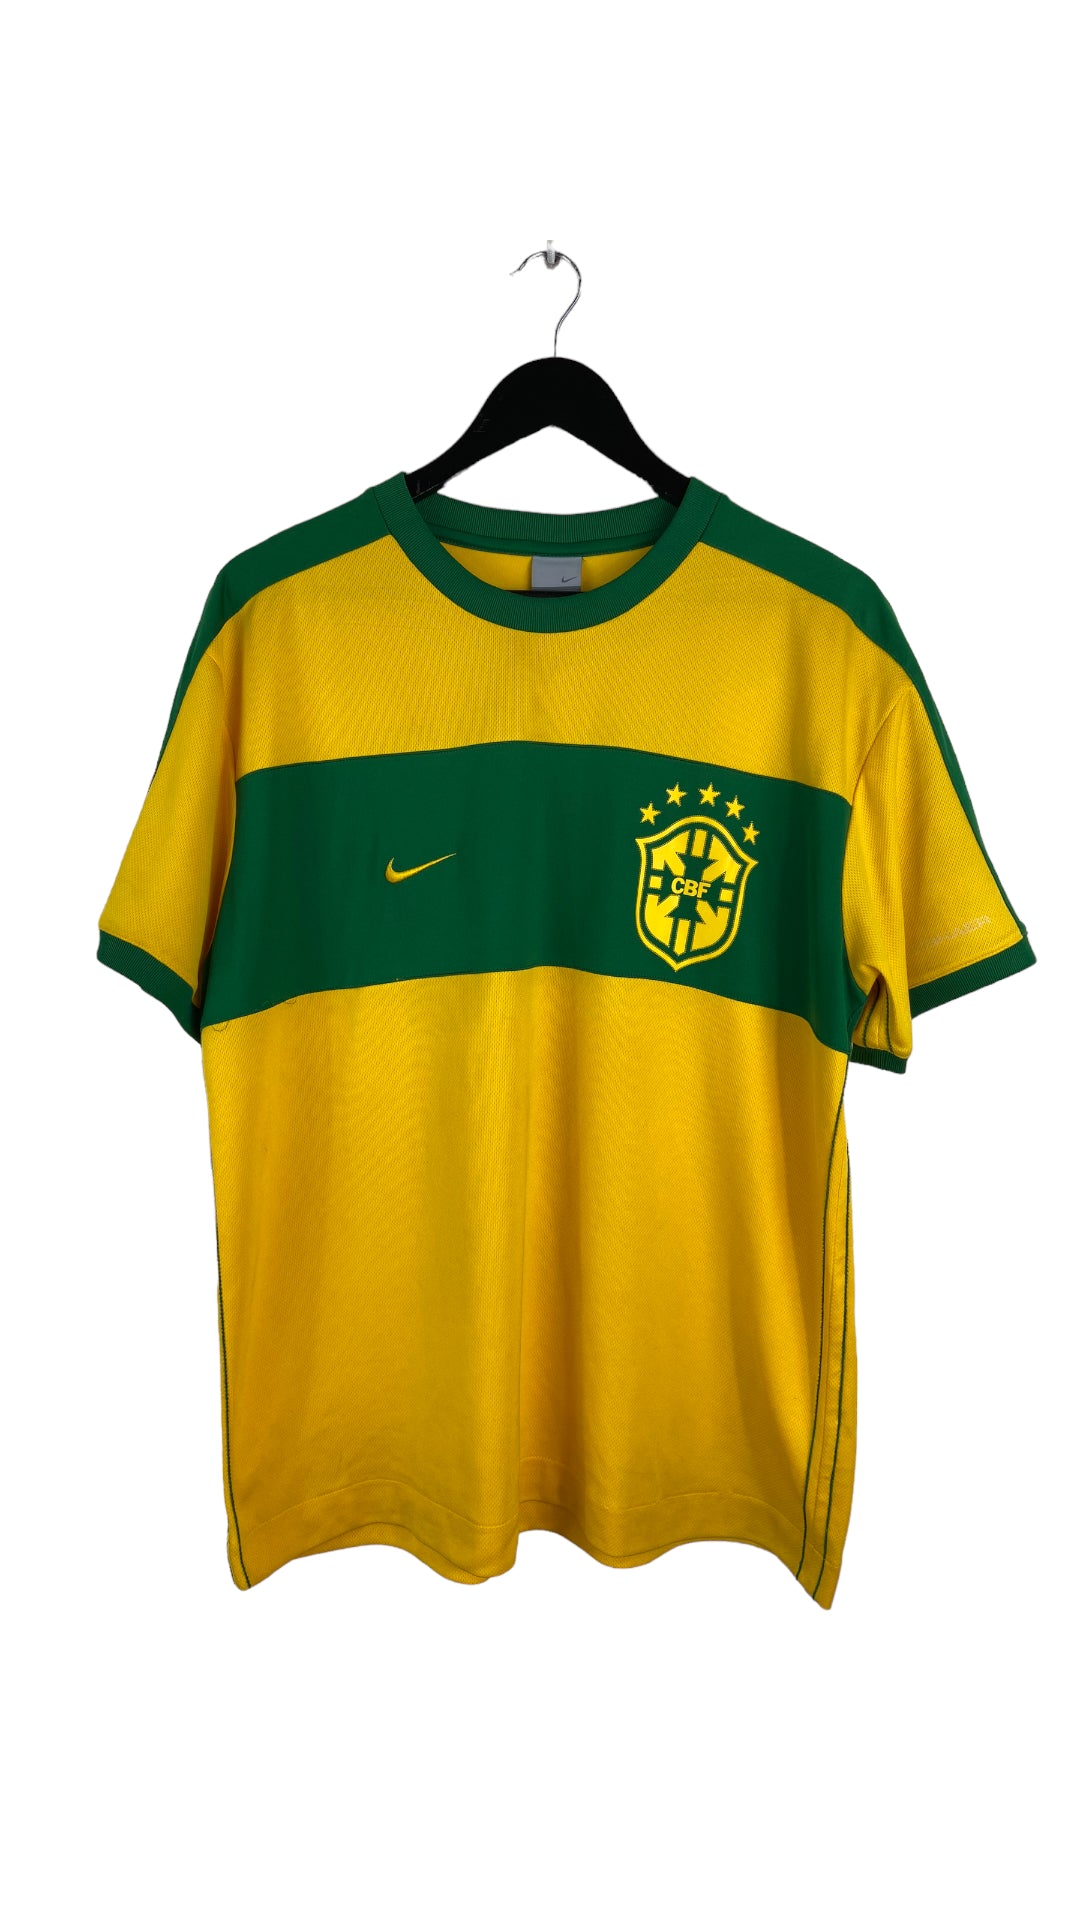 VTG Nike Cbf  Brazil Soccer Jersey Sz M